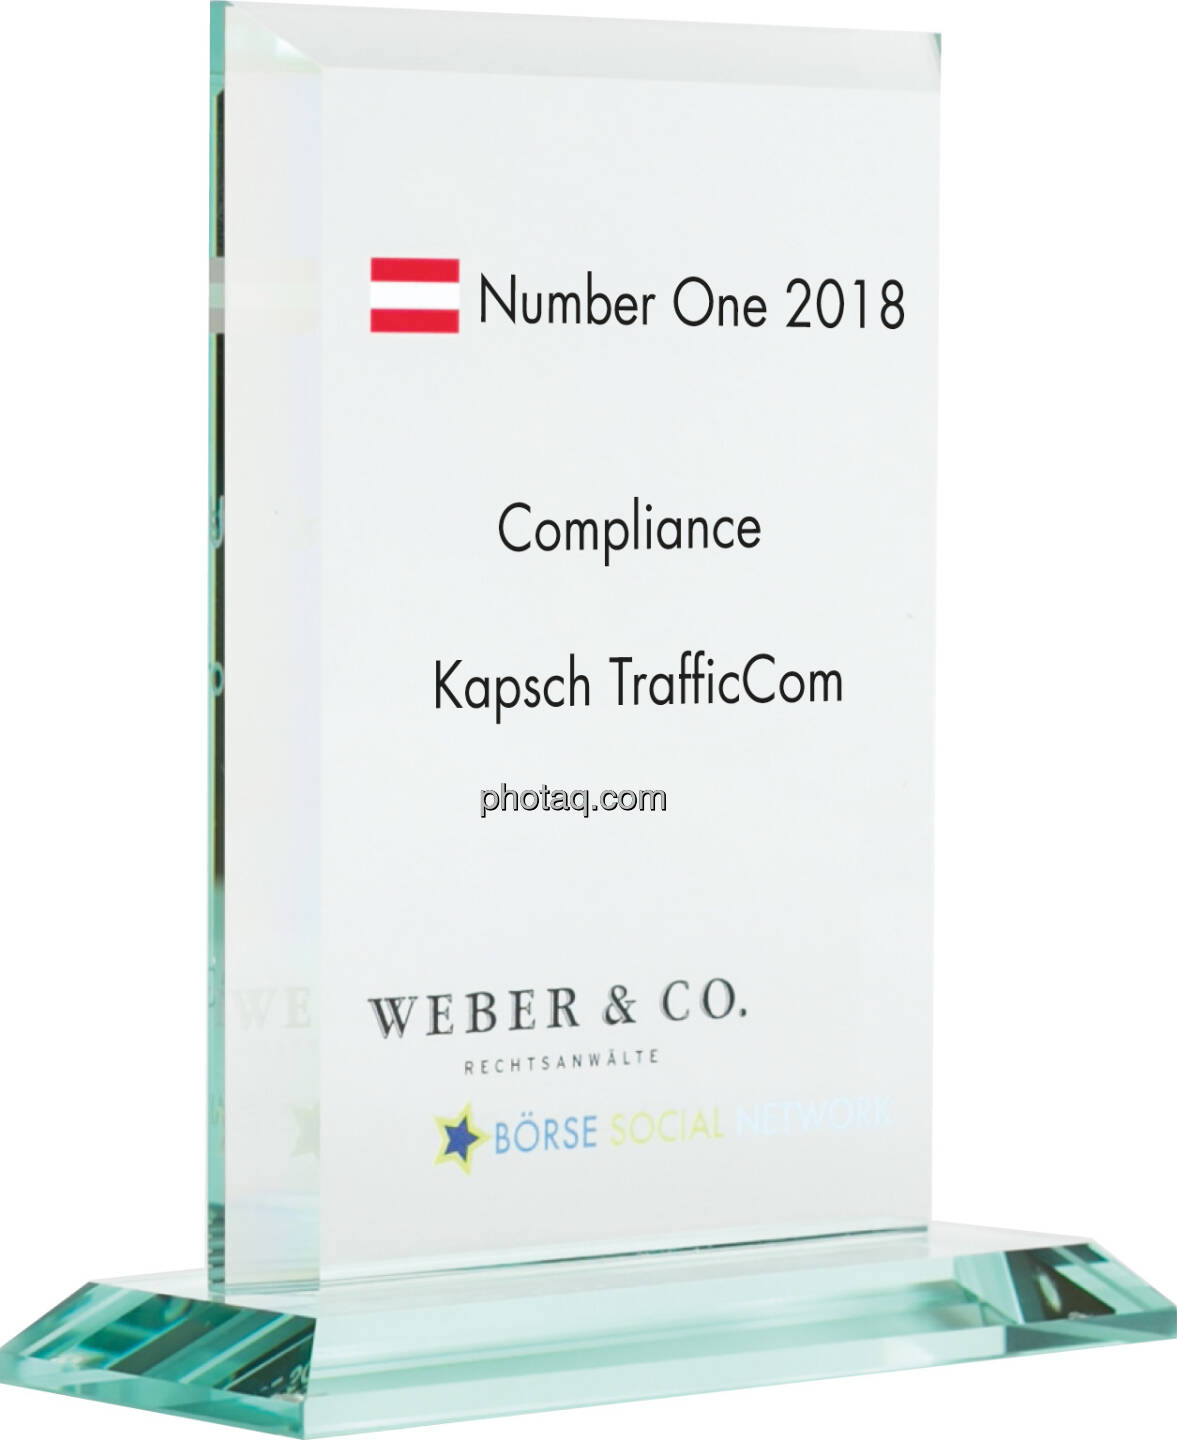 Number One Awards 2018 - Compliance Kapsch TrafficCom